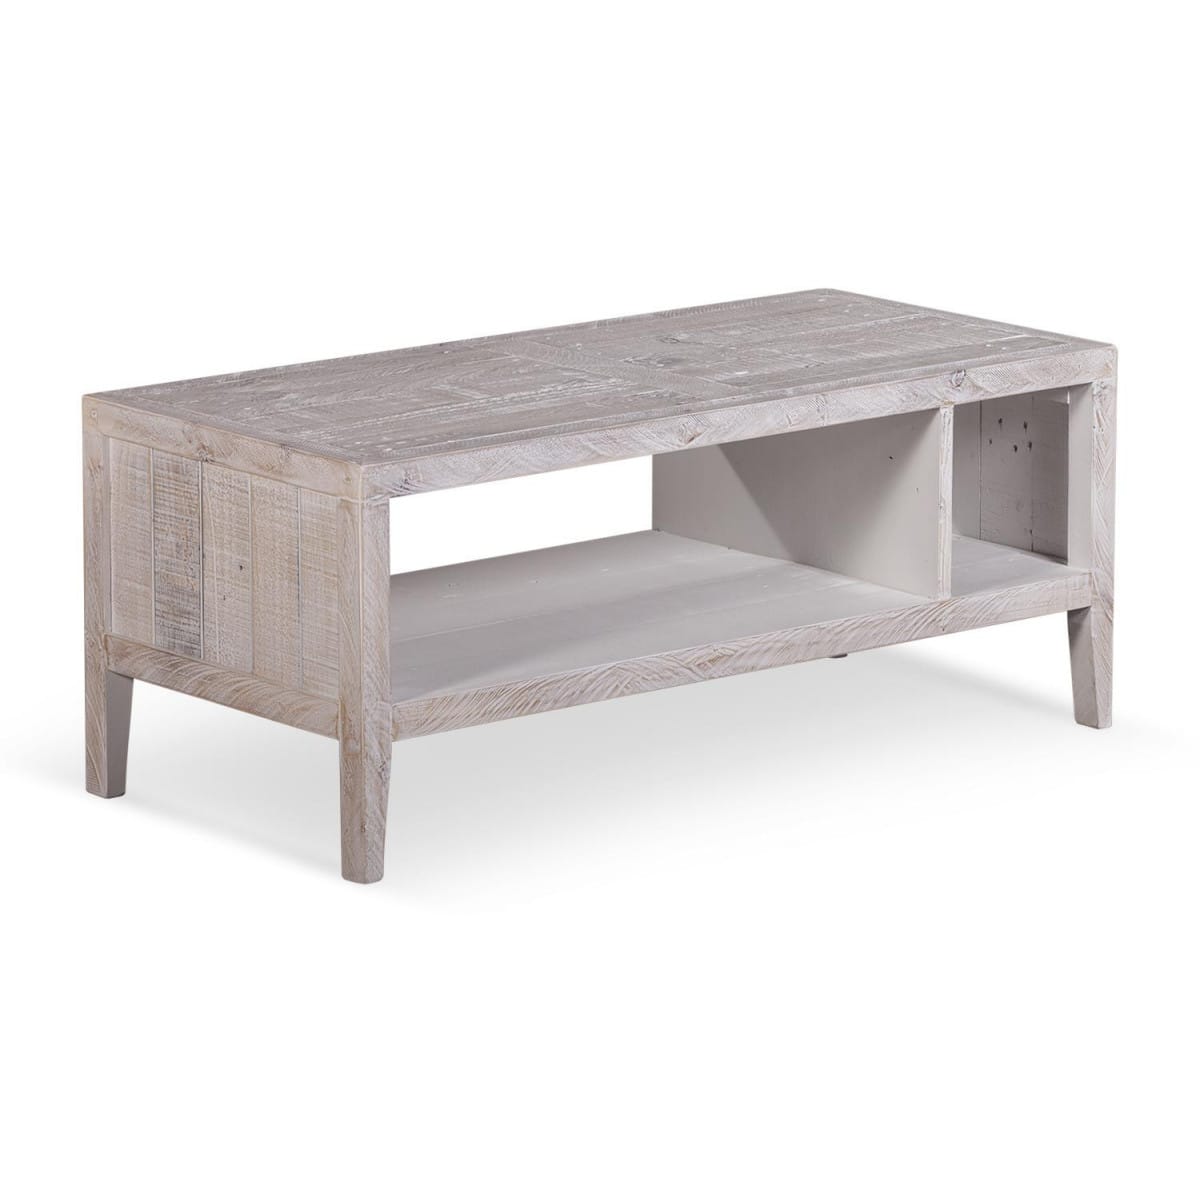 Table basse bois gris 110x50x45cm